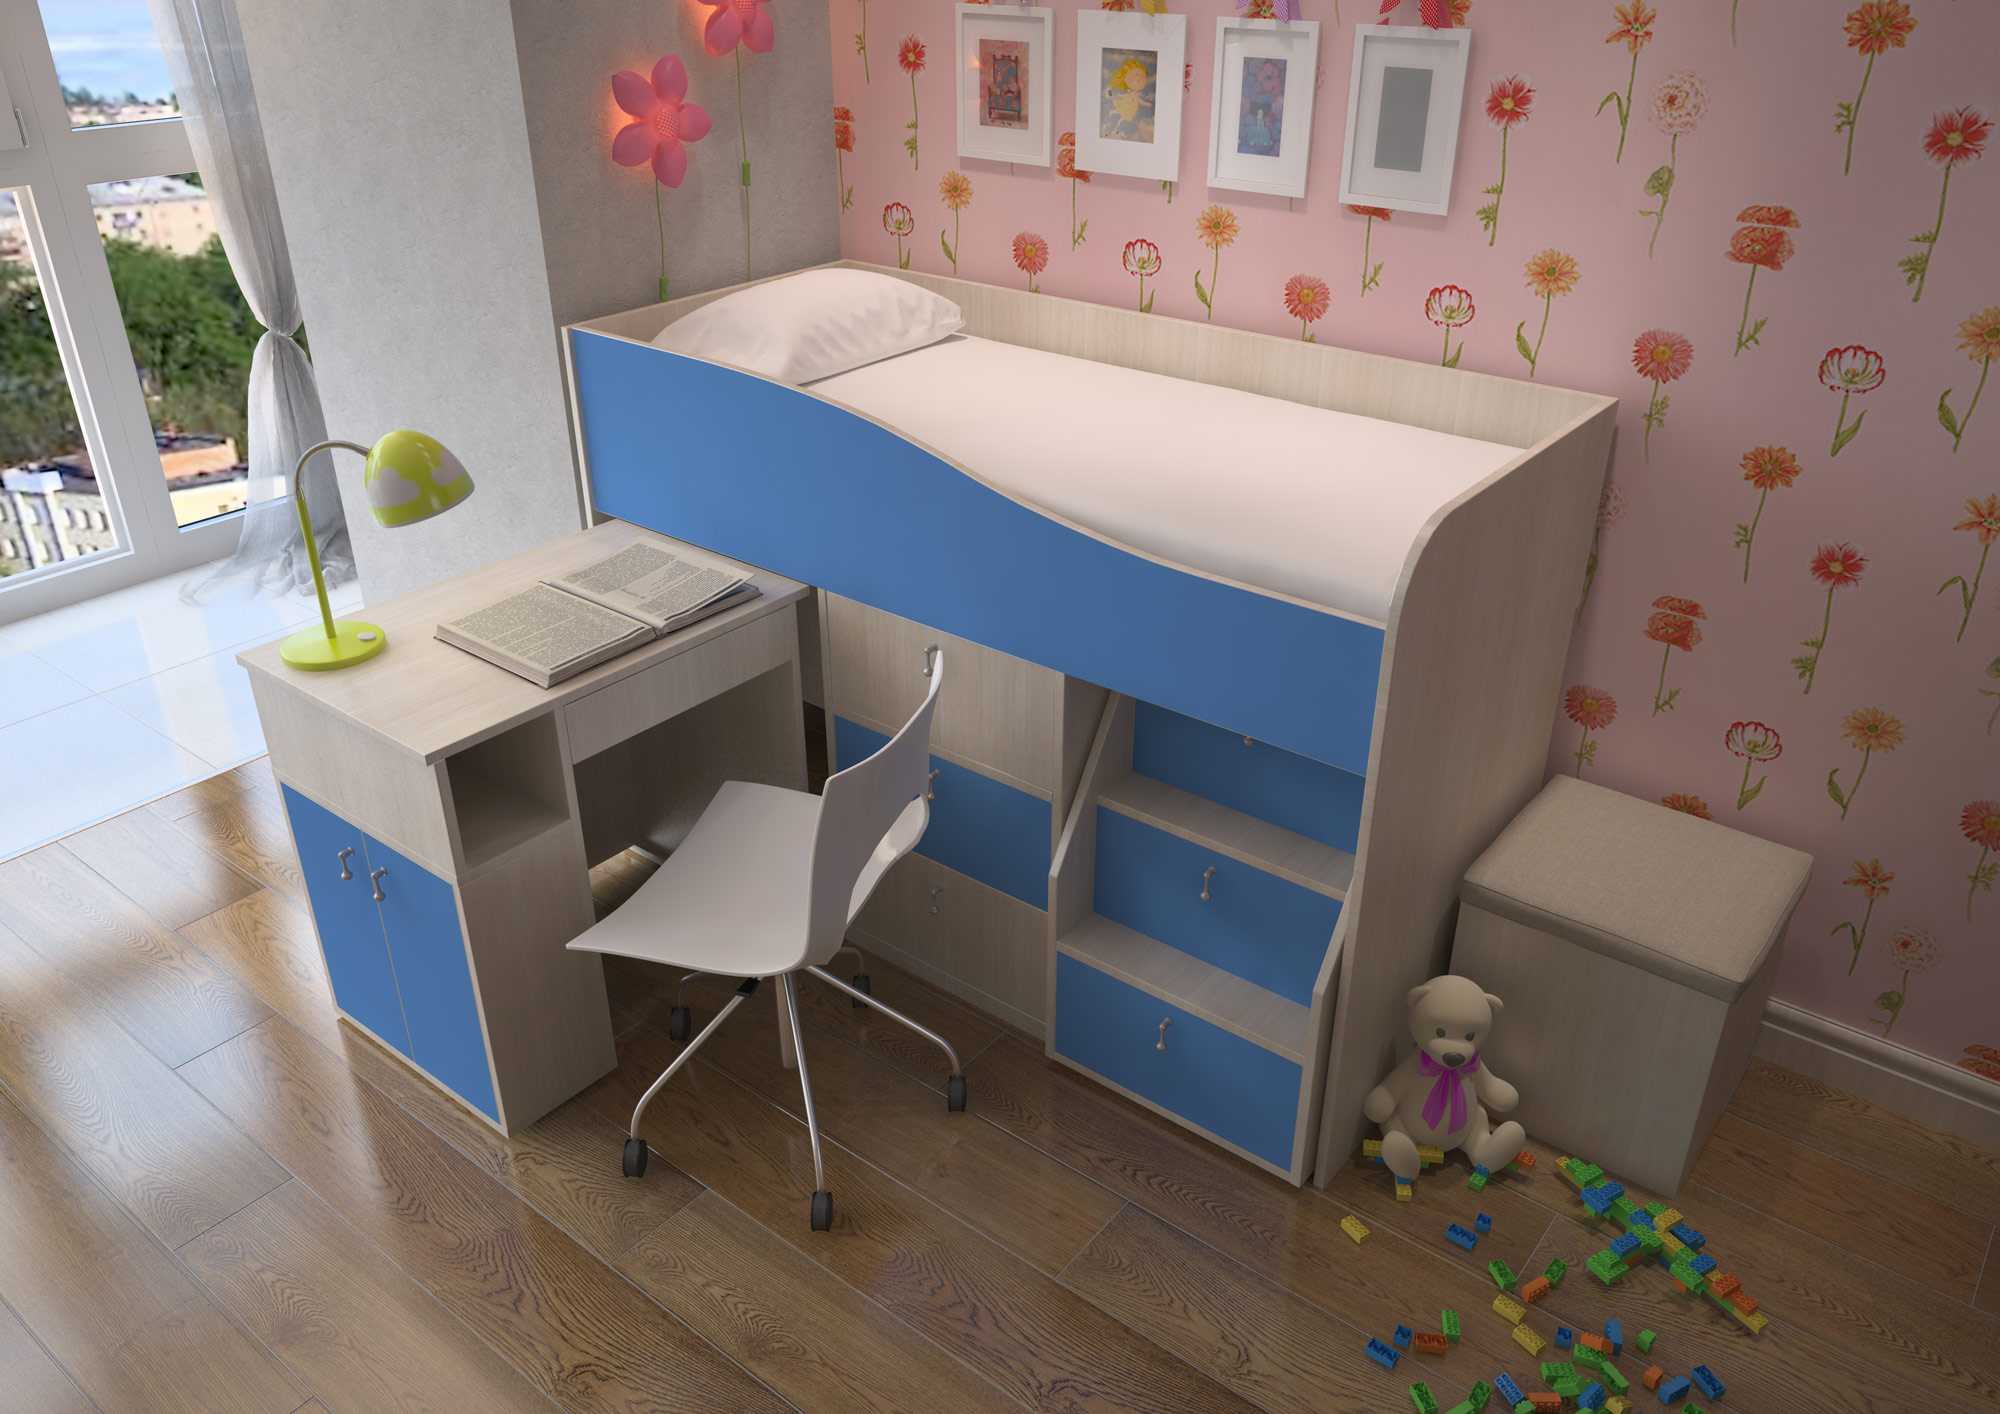 Детская кровать со столом: кровать-чердак, кровать-стол, двухъярусная кровать со столом внизу